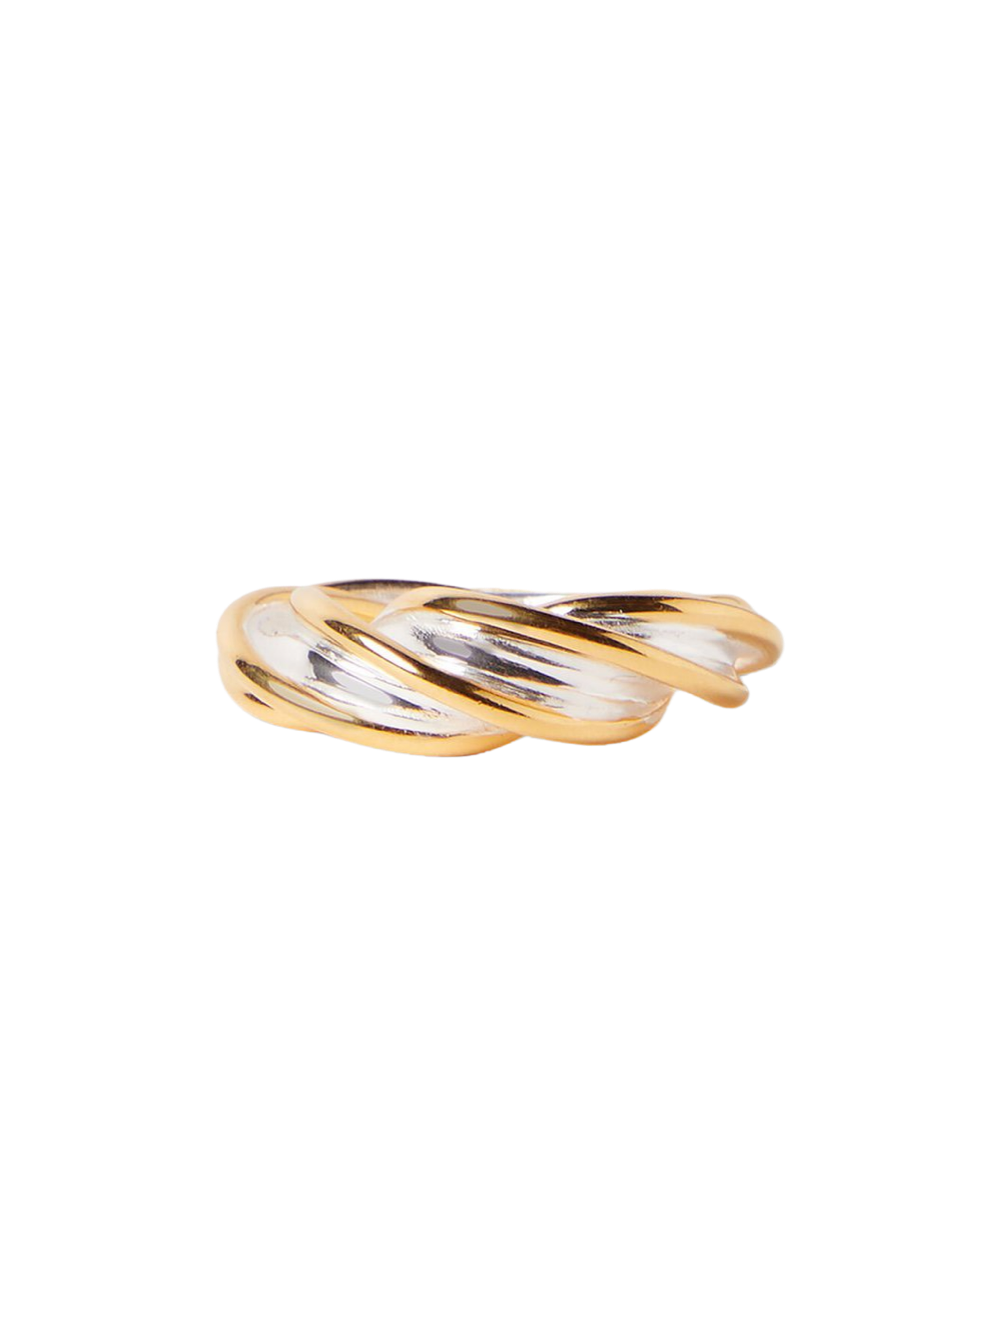 Bottega Veneta Twist Ring in Gold & Silver